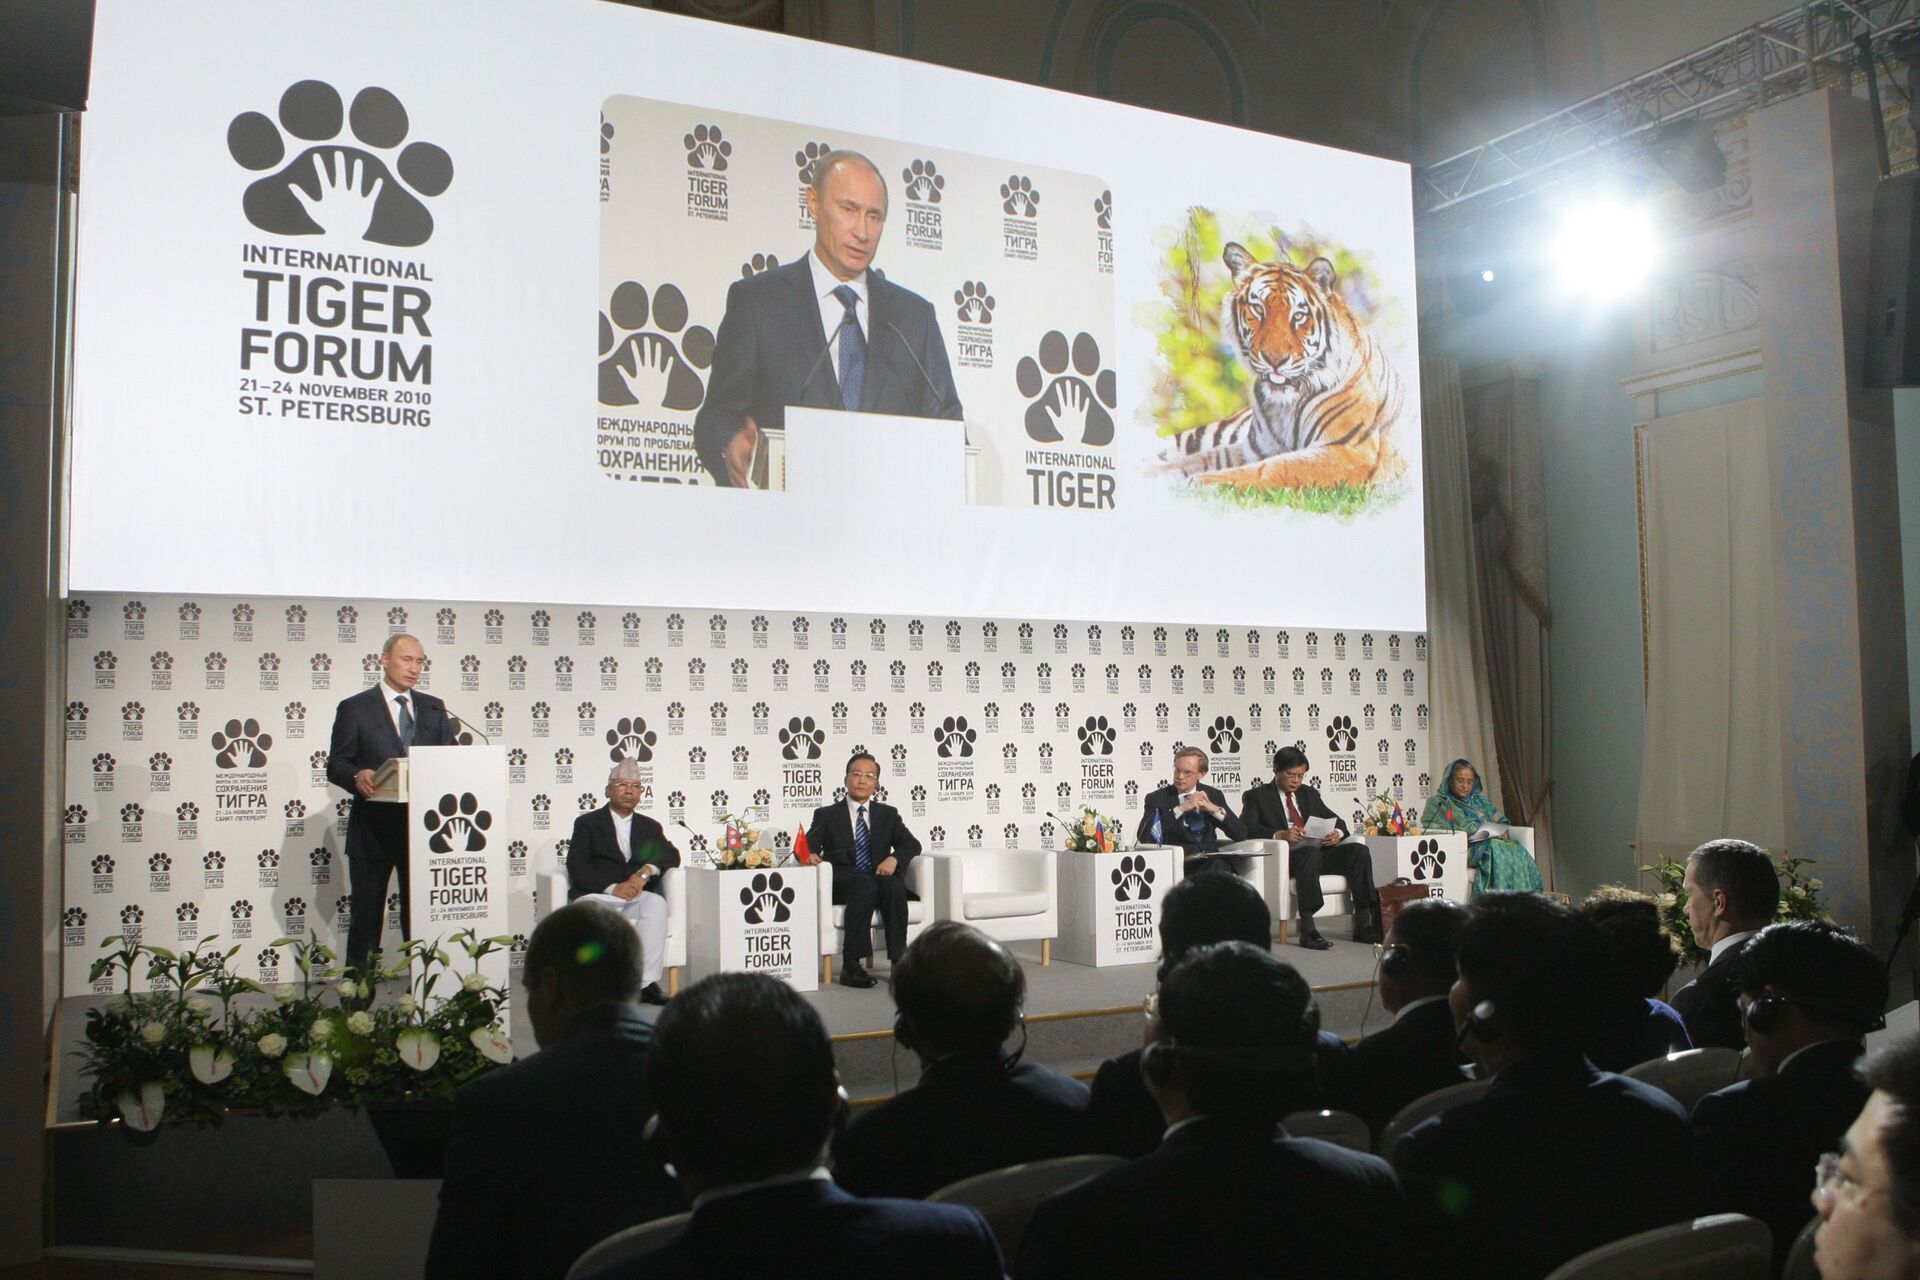 Ngày 23 tháng 11 năm 2010. Vladimir Putin phát biểu tại Diễn đàn Quốc tế về các vấn đề bảo tồn Hổ trên Trái đất - Sputnik Việt Nam, 1920, 05.10.2021